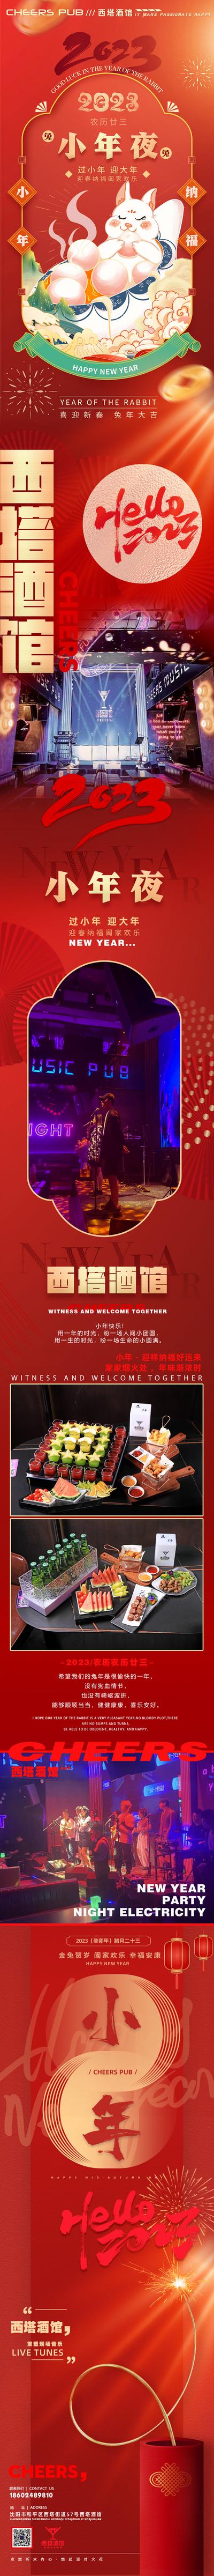 南门网 海报 长图 小酒馆 中国传统节日 小年 2023 活动